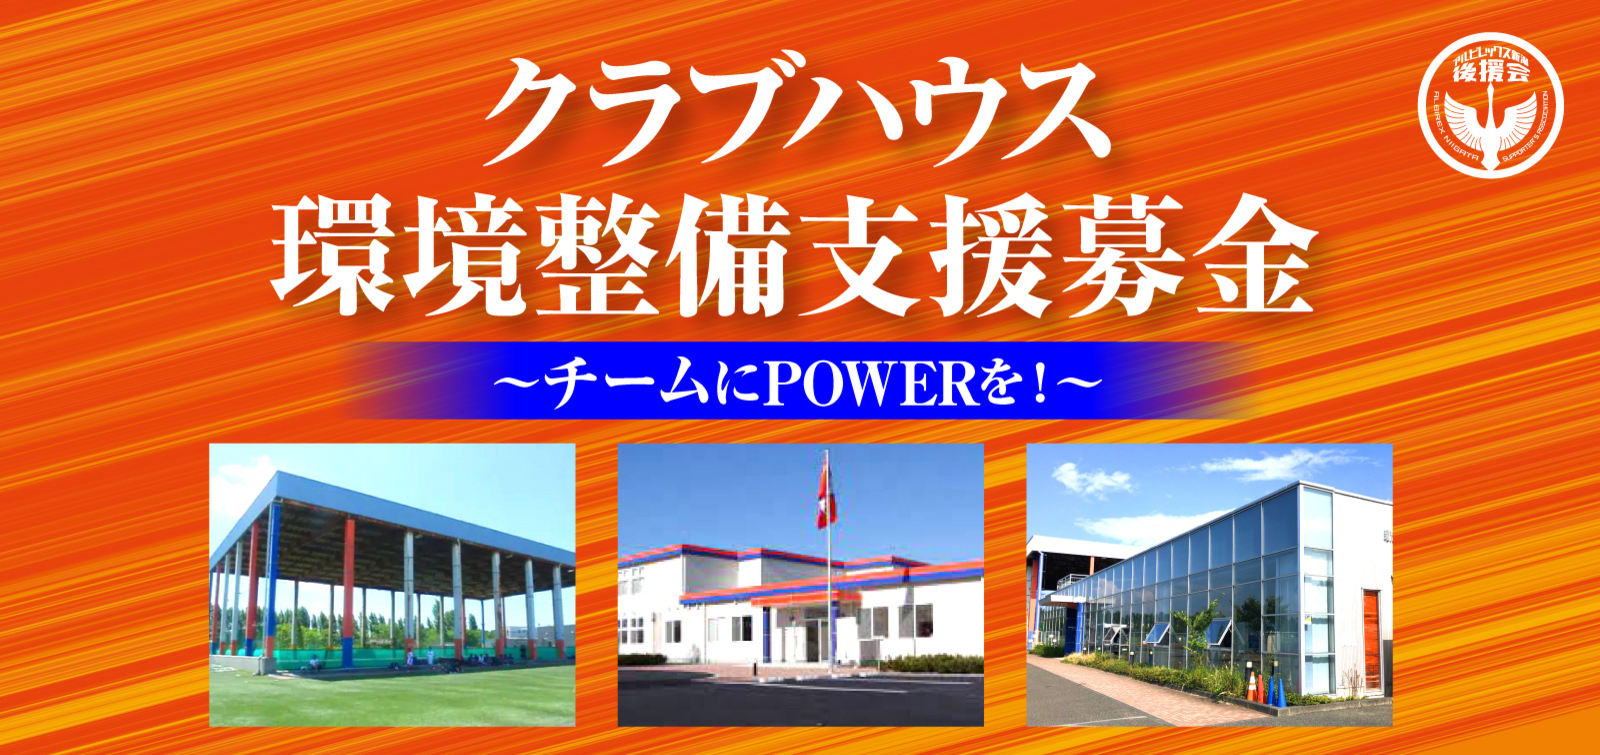 アルビレックス新潟 公式サイト Albirex Niigata Official Website